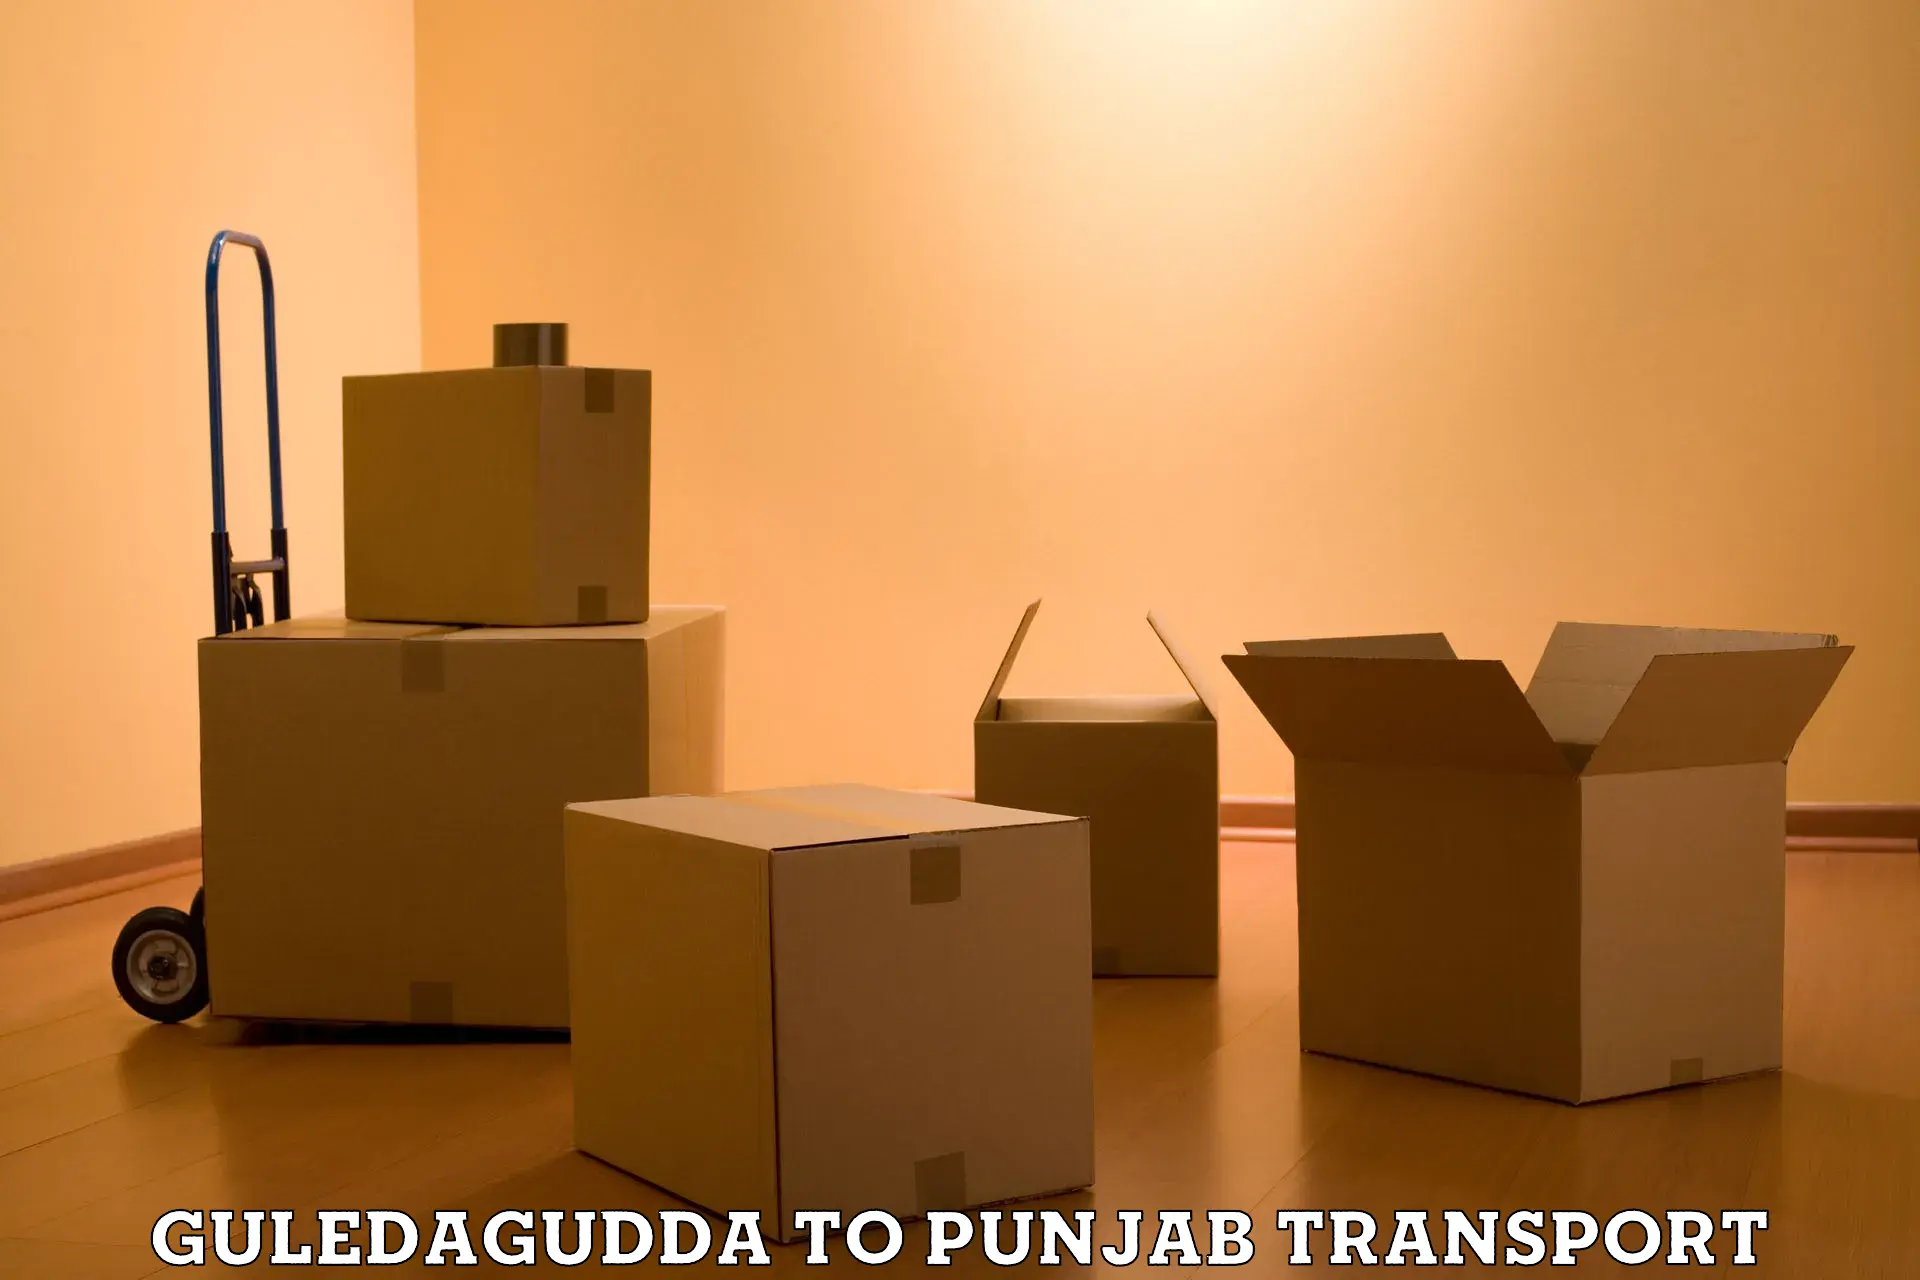 Transport in sharing Guledagudda to Fazilka